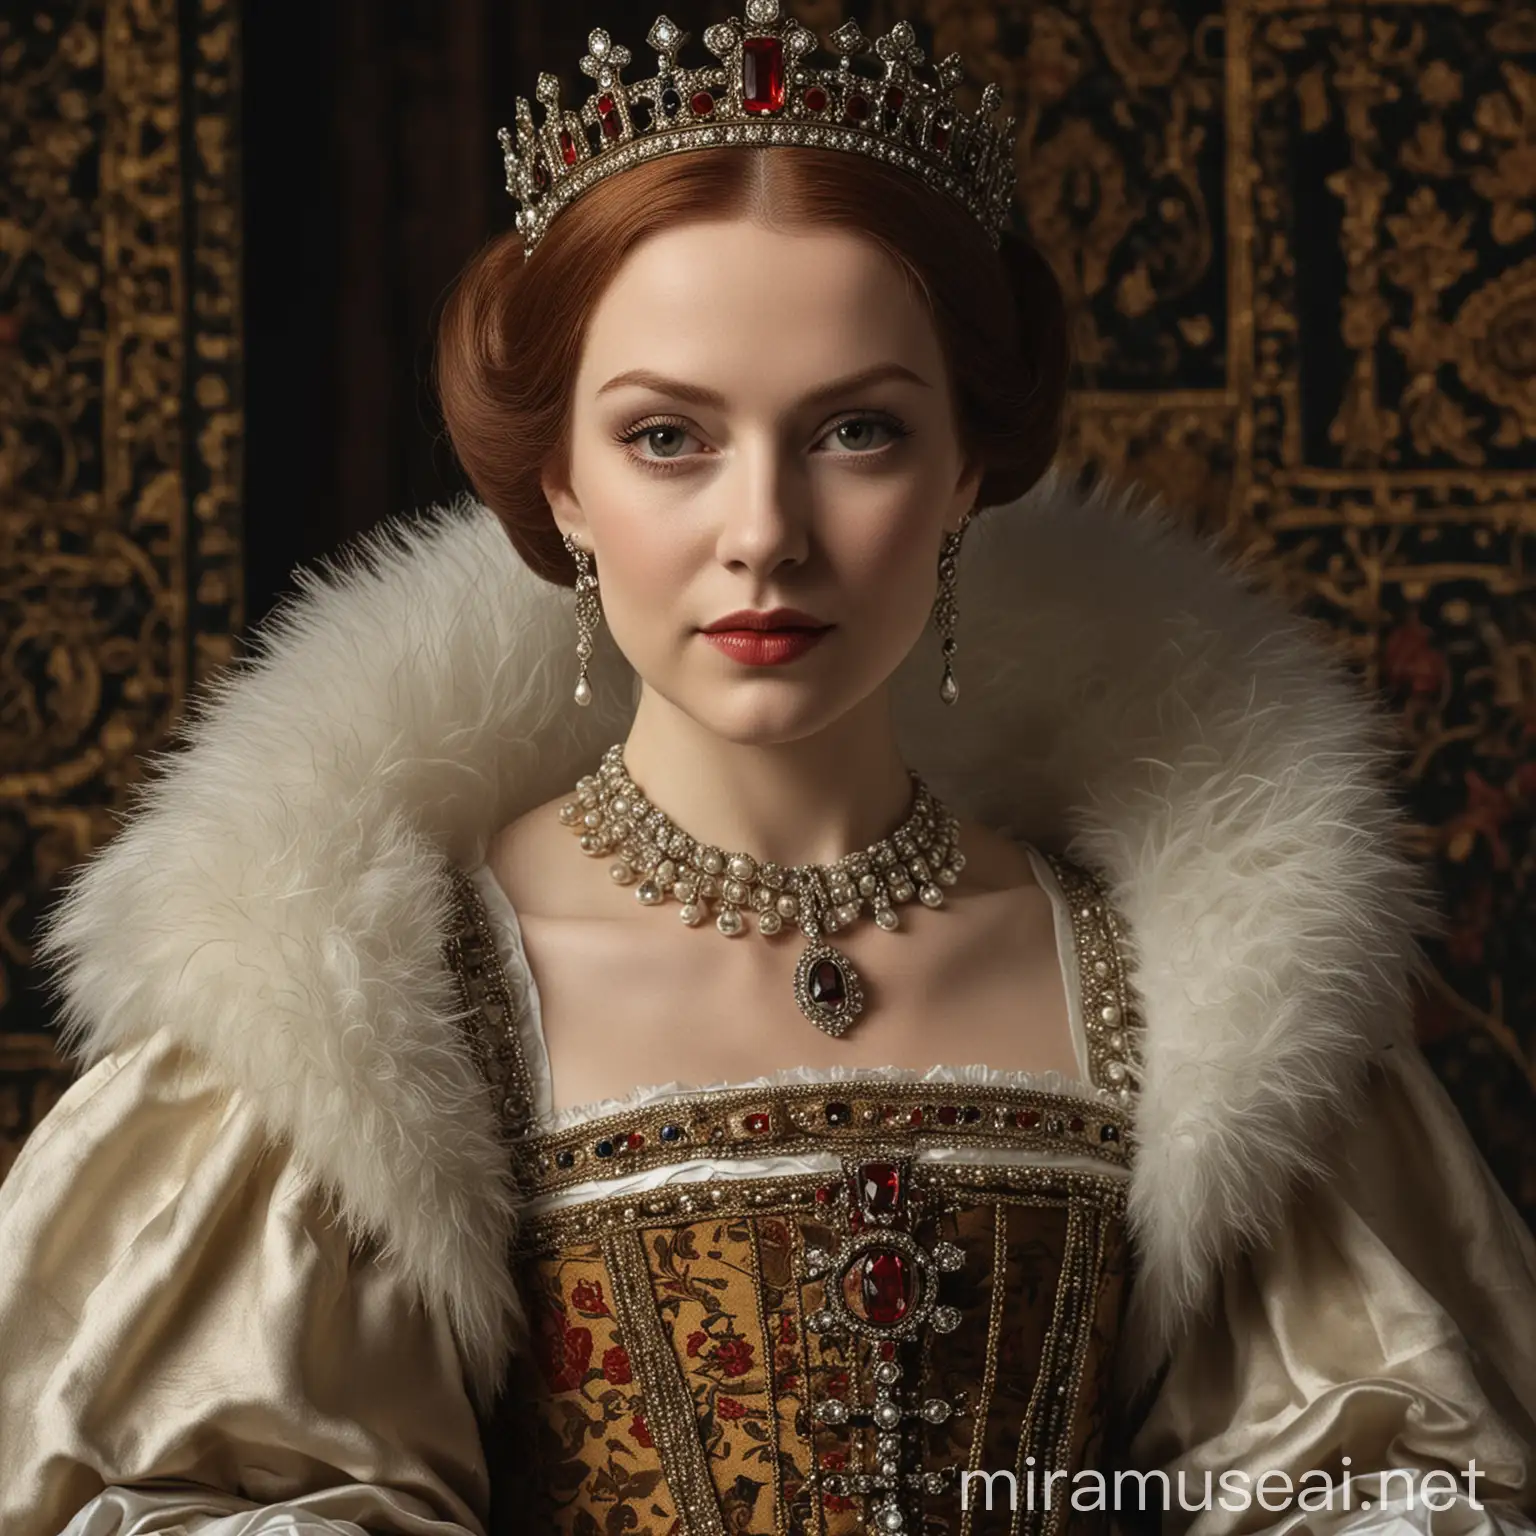 Regal Tudor Queen in Elegant Attire